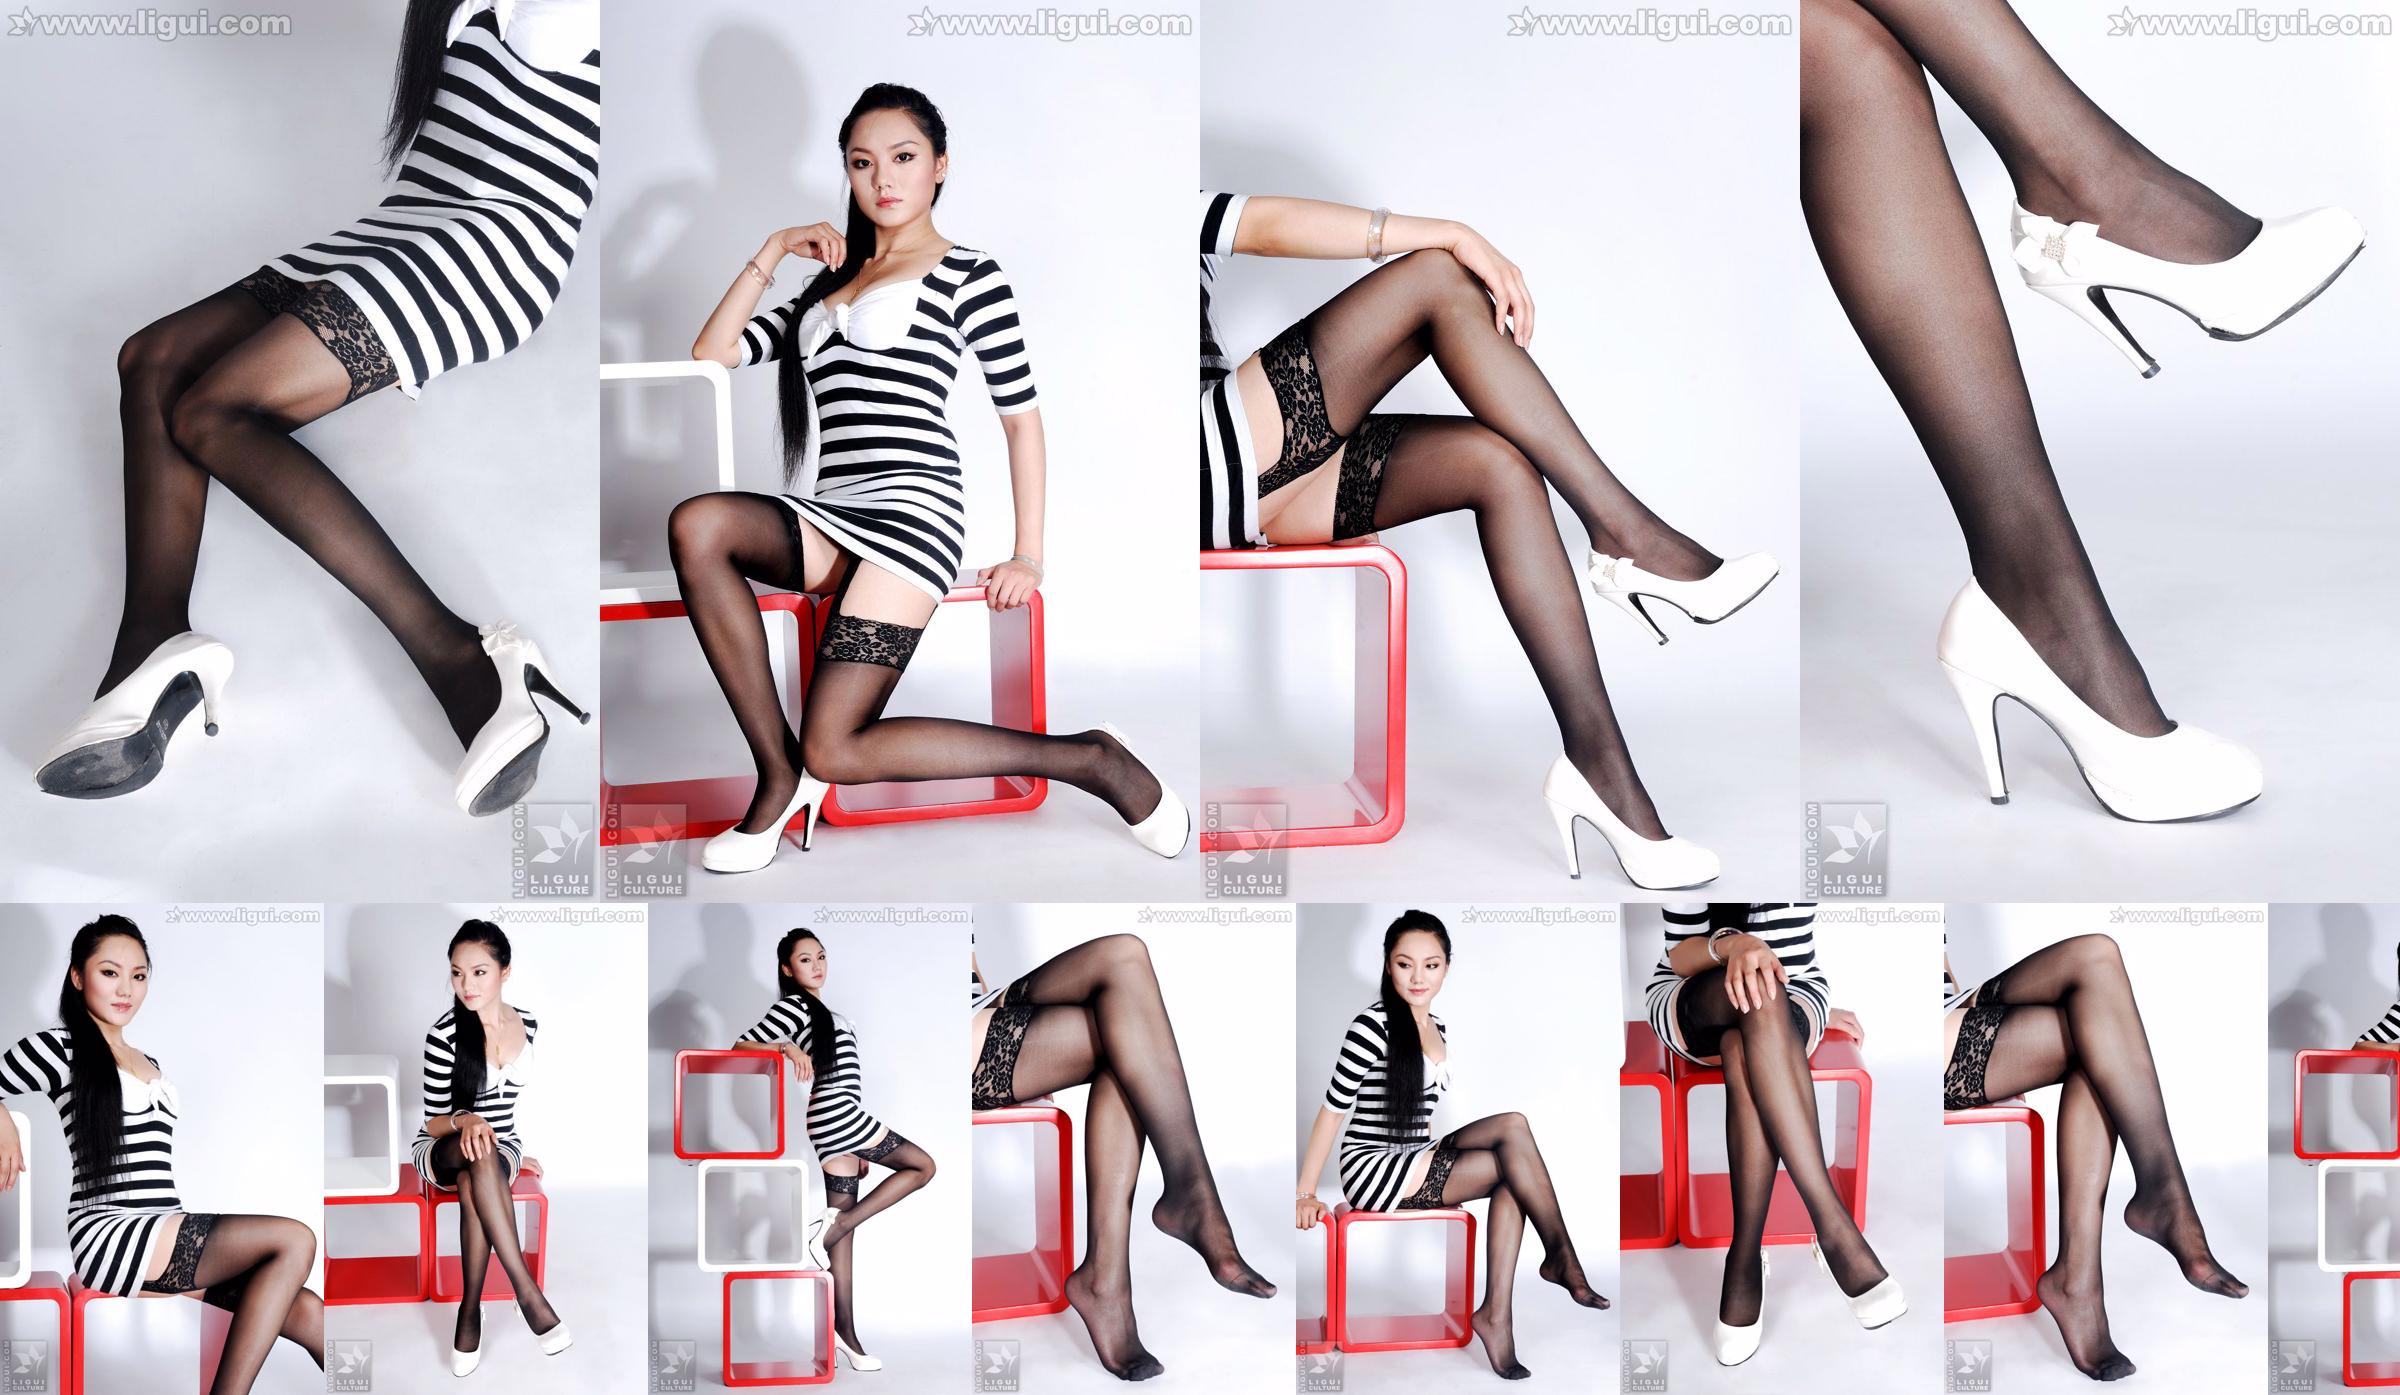 Người mẫu Dương Tử "Sự quyến rũ của những đôi tất trong trang trí nhà cửa đơn giản" [丽 柜 LiGui] Ảnh chân dài ngọc nữ No.4c770e Trang 1